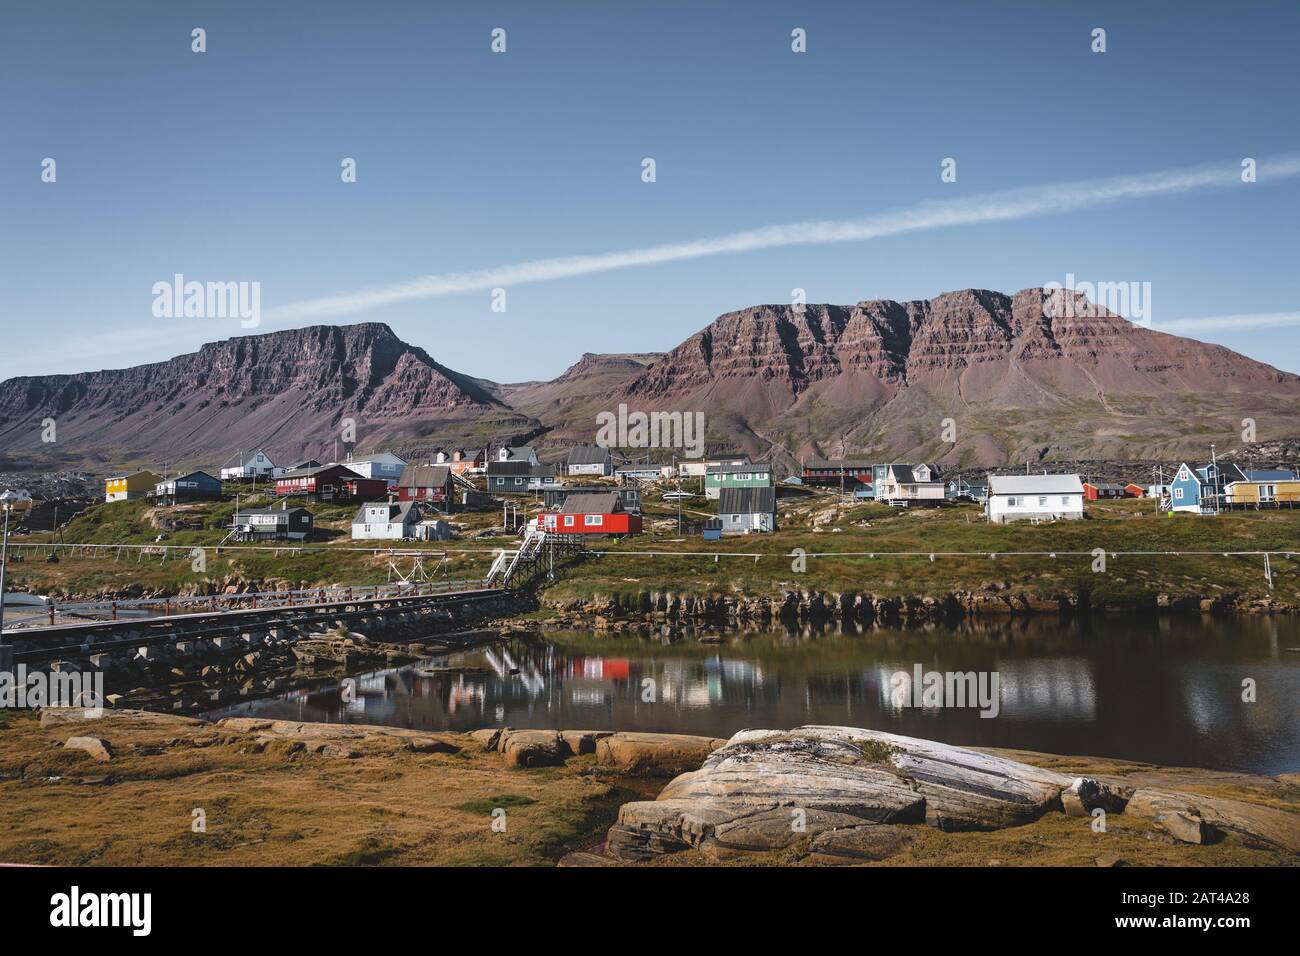 Vue sur les maisons colorées de l'île Disko au Groenland, arctique ville de Qeqertarsuaq. Situé dans la baie de Disko. Ciel bleu et journée ensoleillée. Montagne de la table Banque D'Images